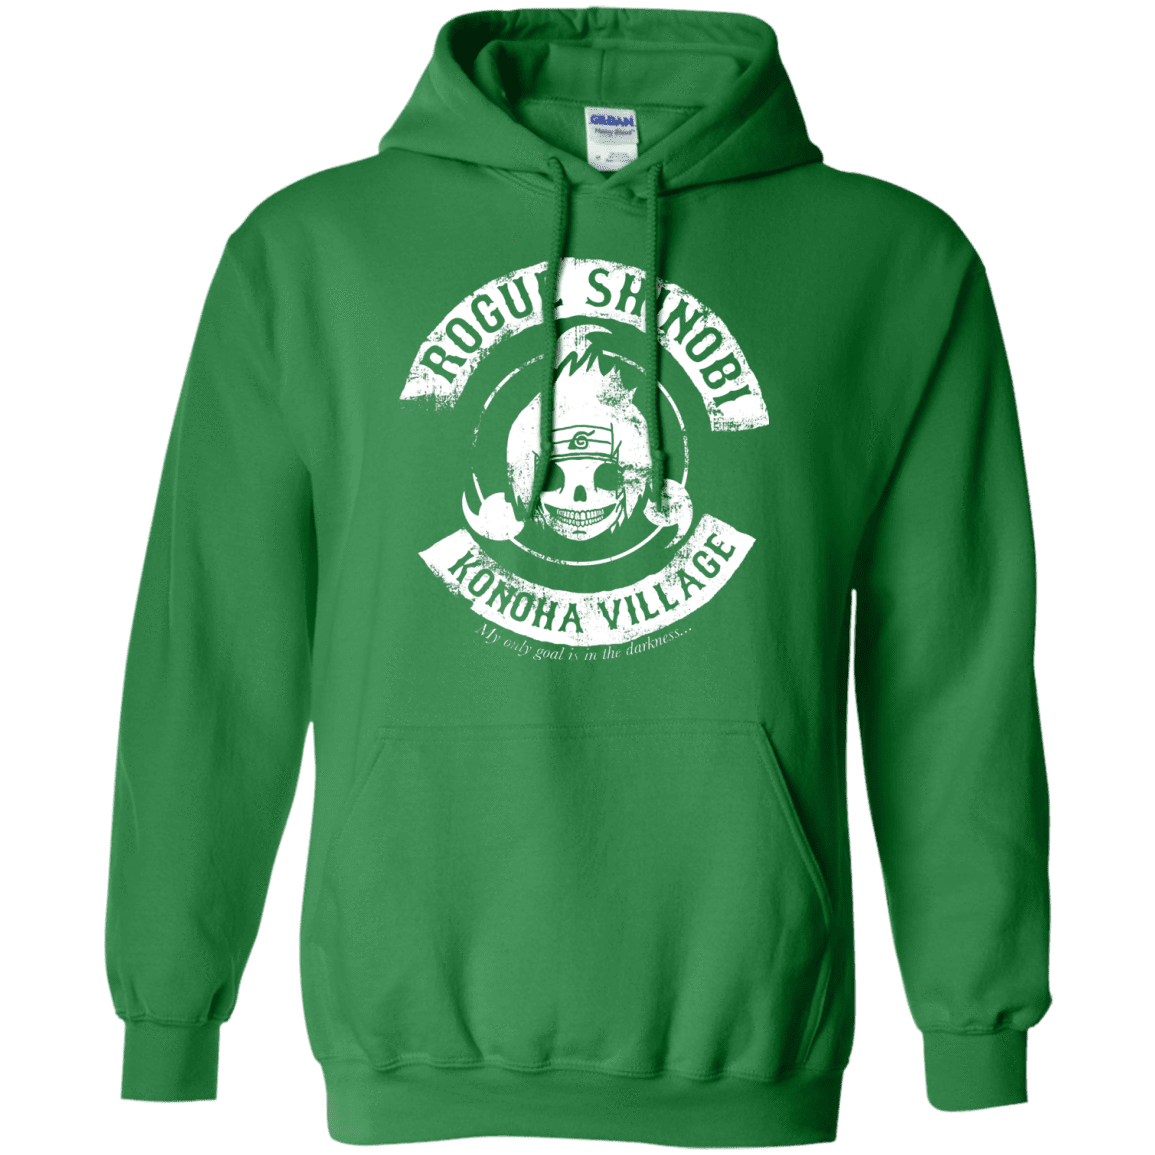 Sweatshirts Irish Green / S Rogue Shinobi Pullover Hoodie